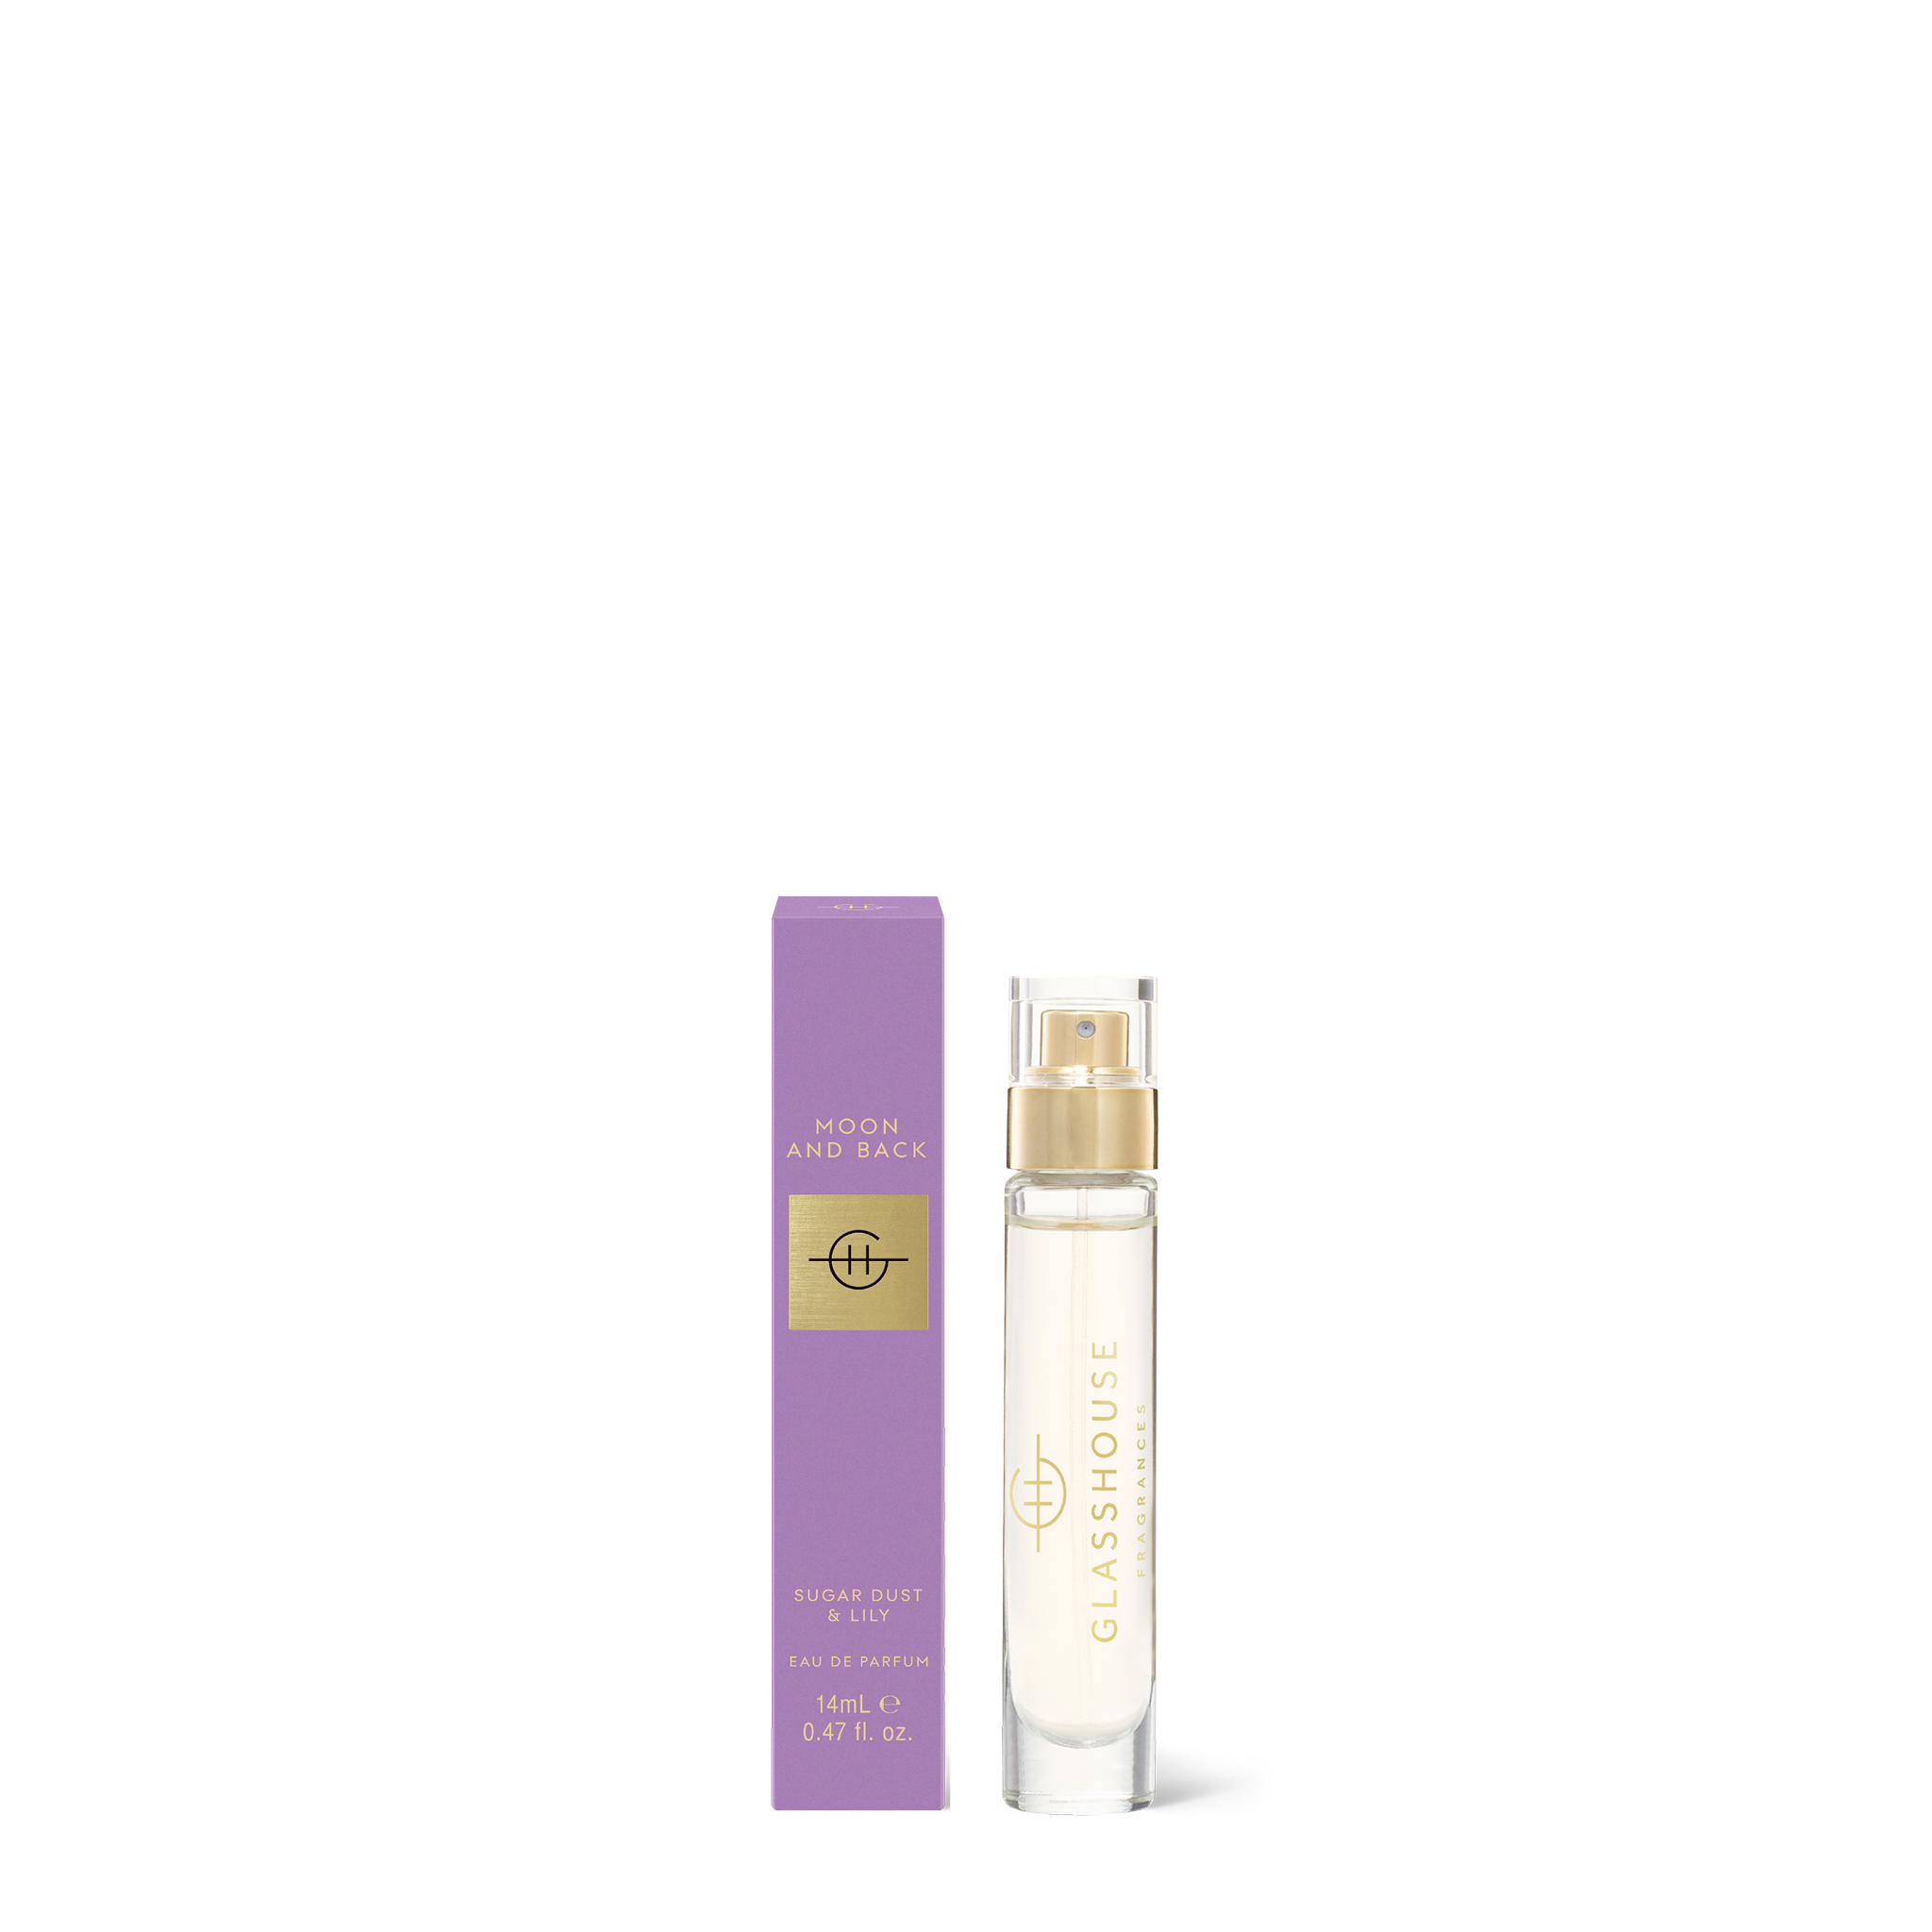 Glasshouse Fragrances Moon & Back 14ml Eau de parfum with box